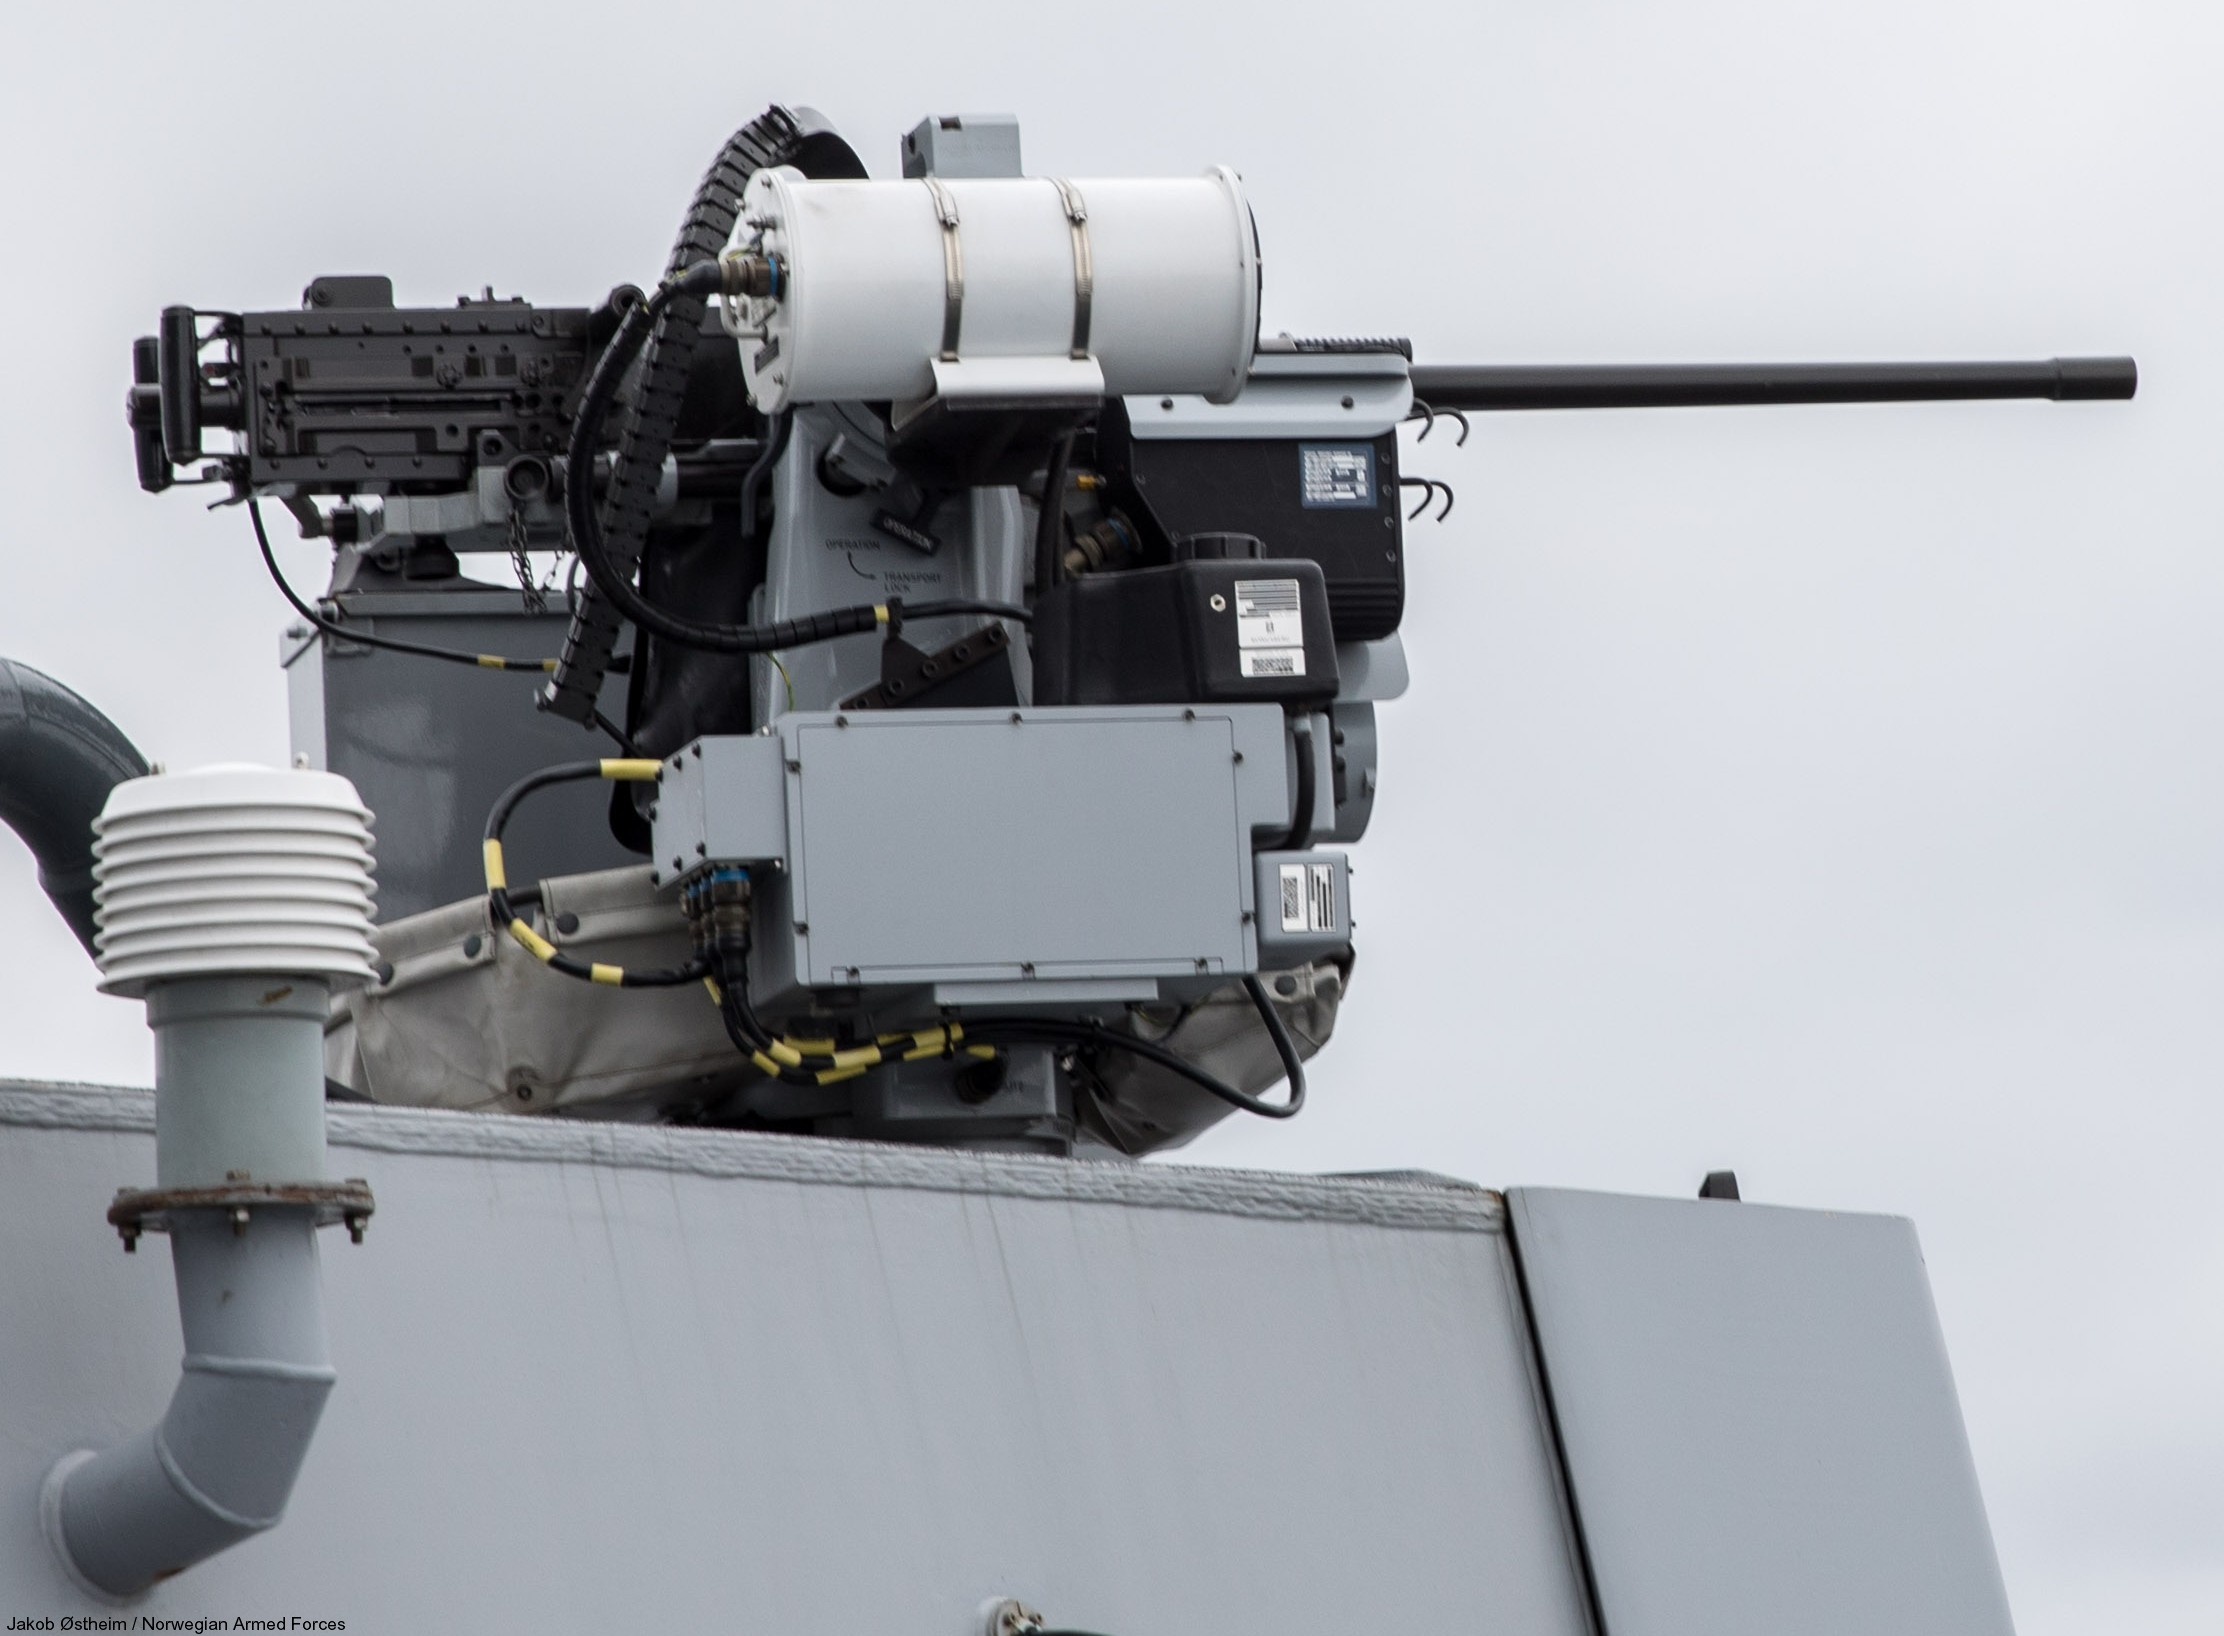 فرقاطة fridtjof nansen من الدرجة الملكية البحرية النرويجية sjoforsvaret 07 kongsberg defense seaprotector machine gun system